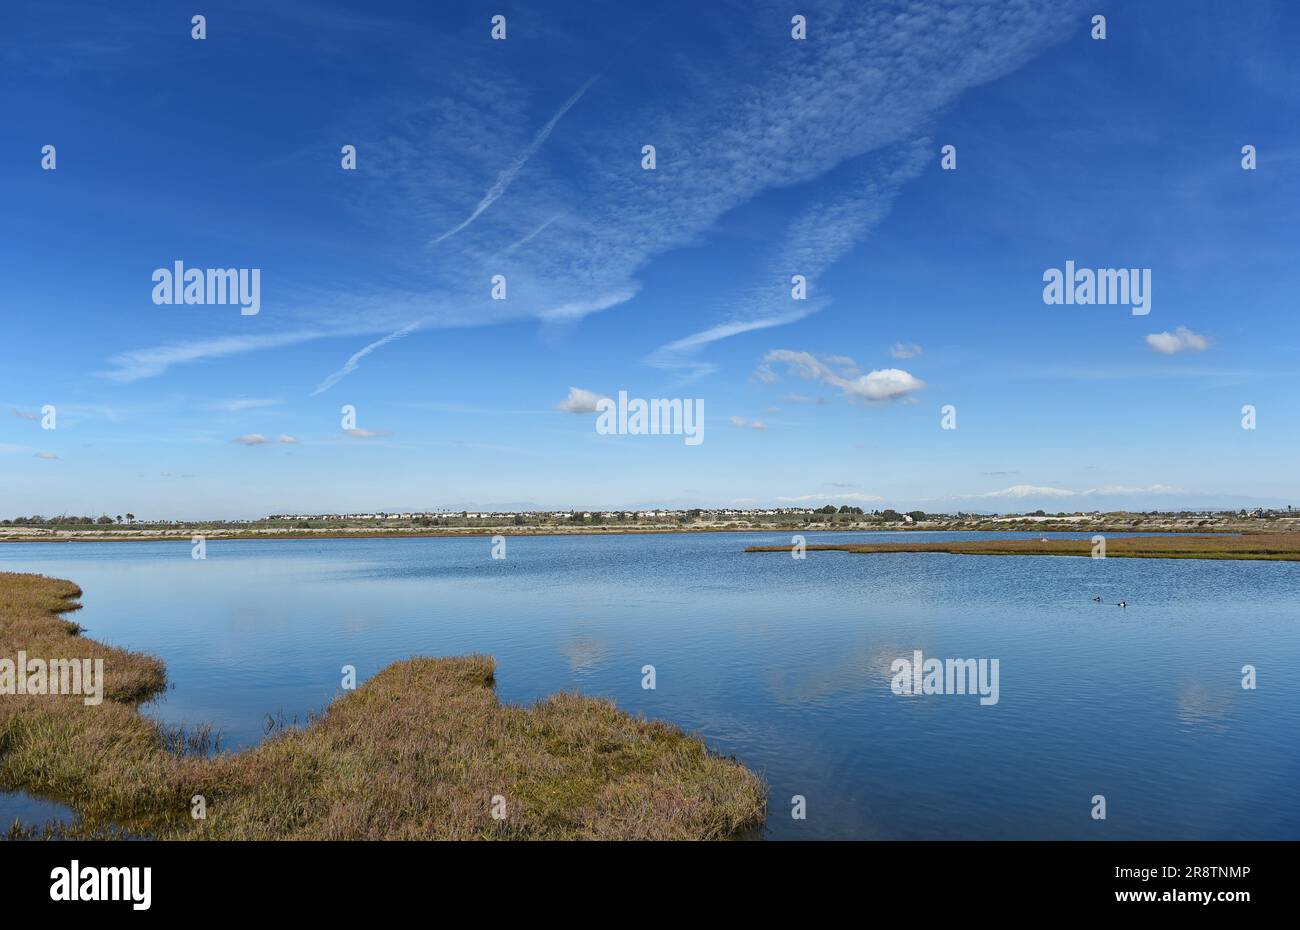 Erba paludosa alle paludi di Bolsa Chica a Huntington Beach, California, con un cielo blu striato di nuvole. Foto Stock